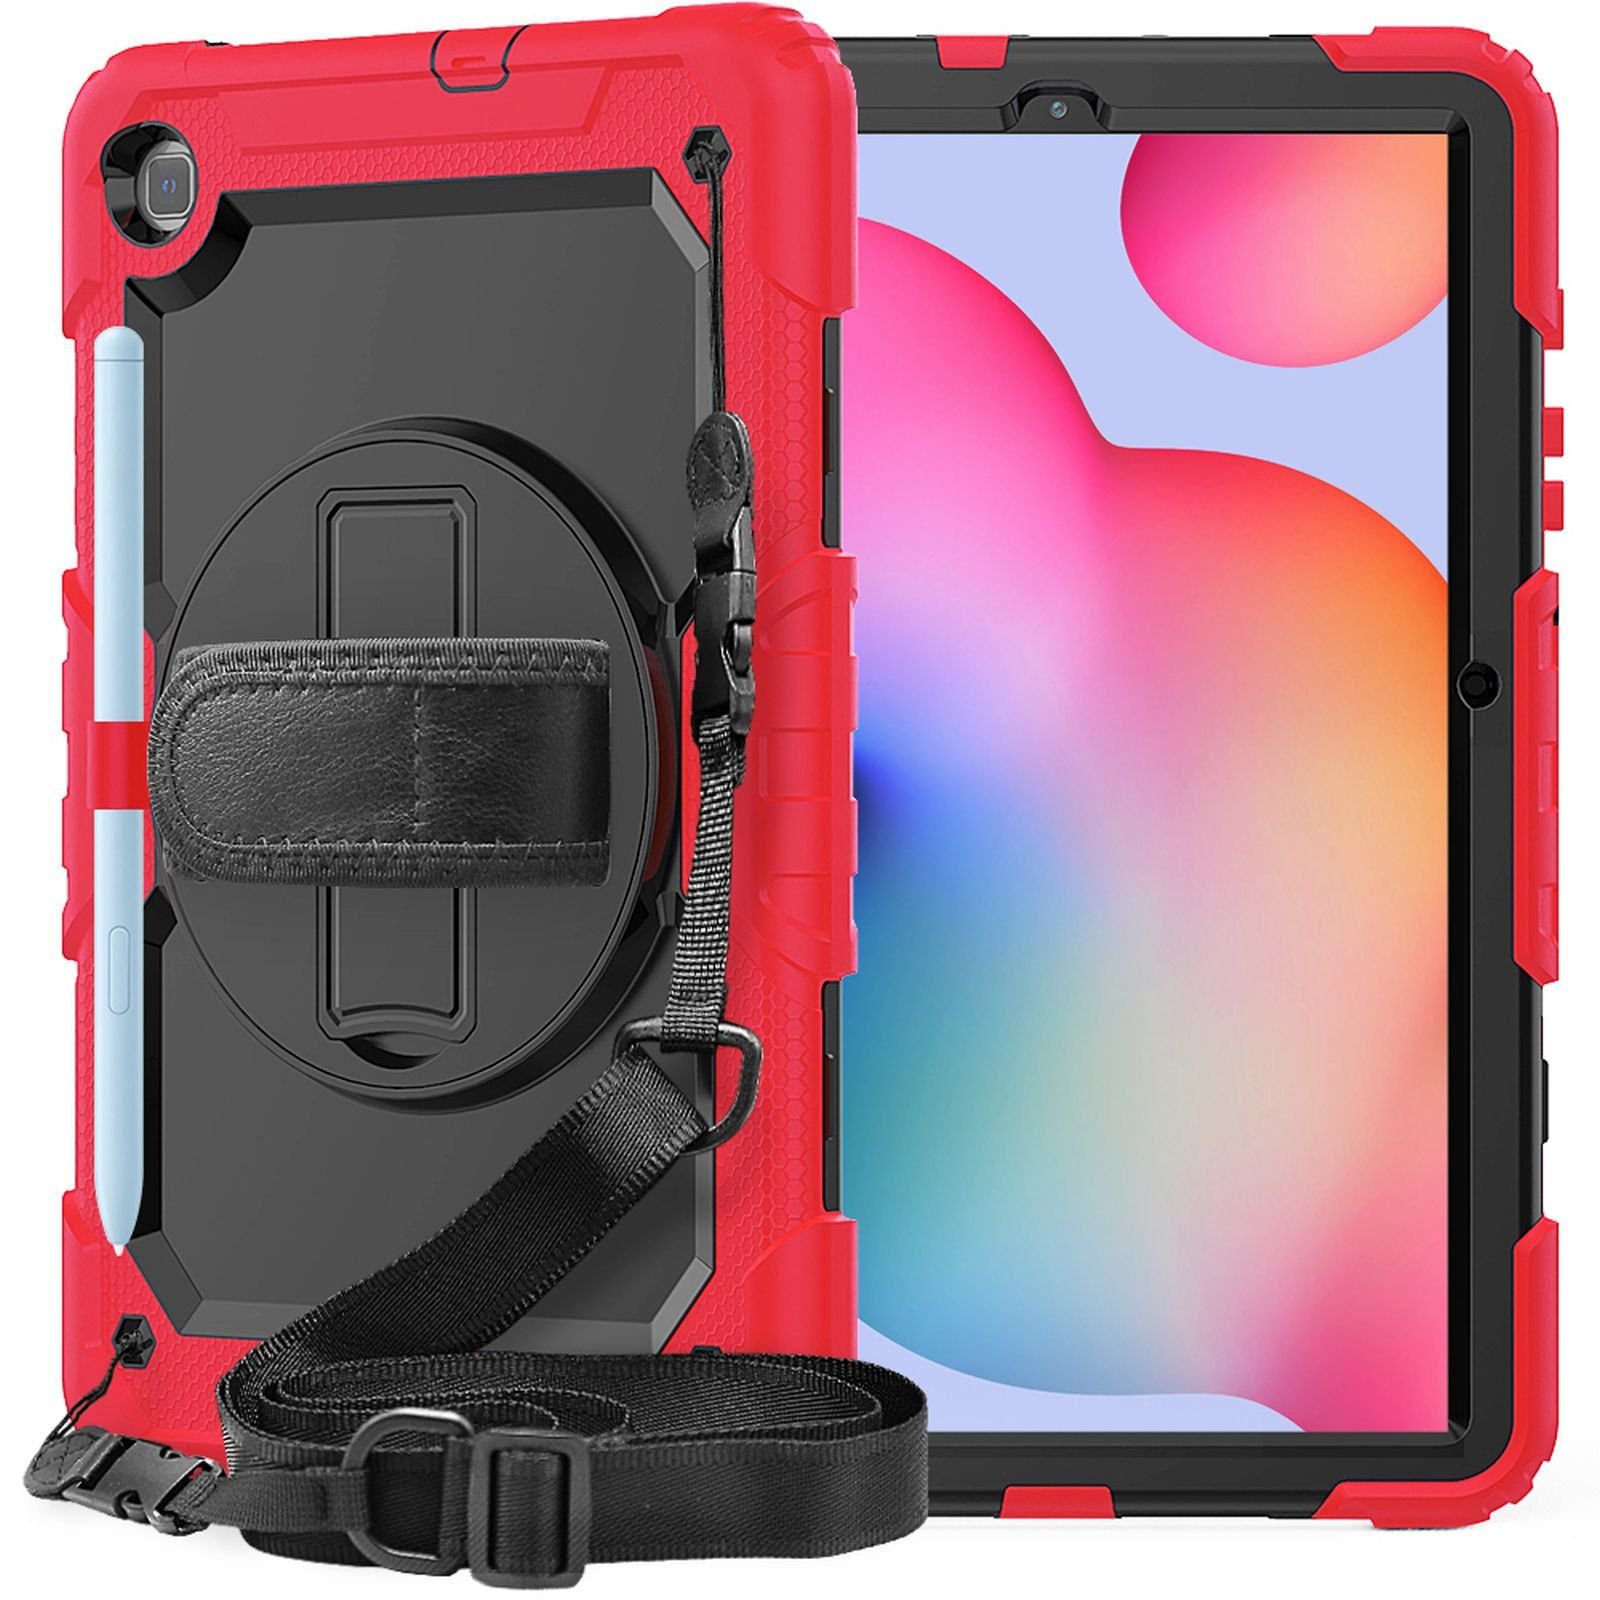 Lobwerk Tablet-Hülle 4in1 Hülle für Samsung Galaxy Tab S6 Lite SM-P610 SM- P615 10.4, Sturzdämpfung, Aufstellfunktion, Outdoor, Farbe: Rot